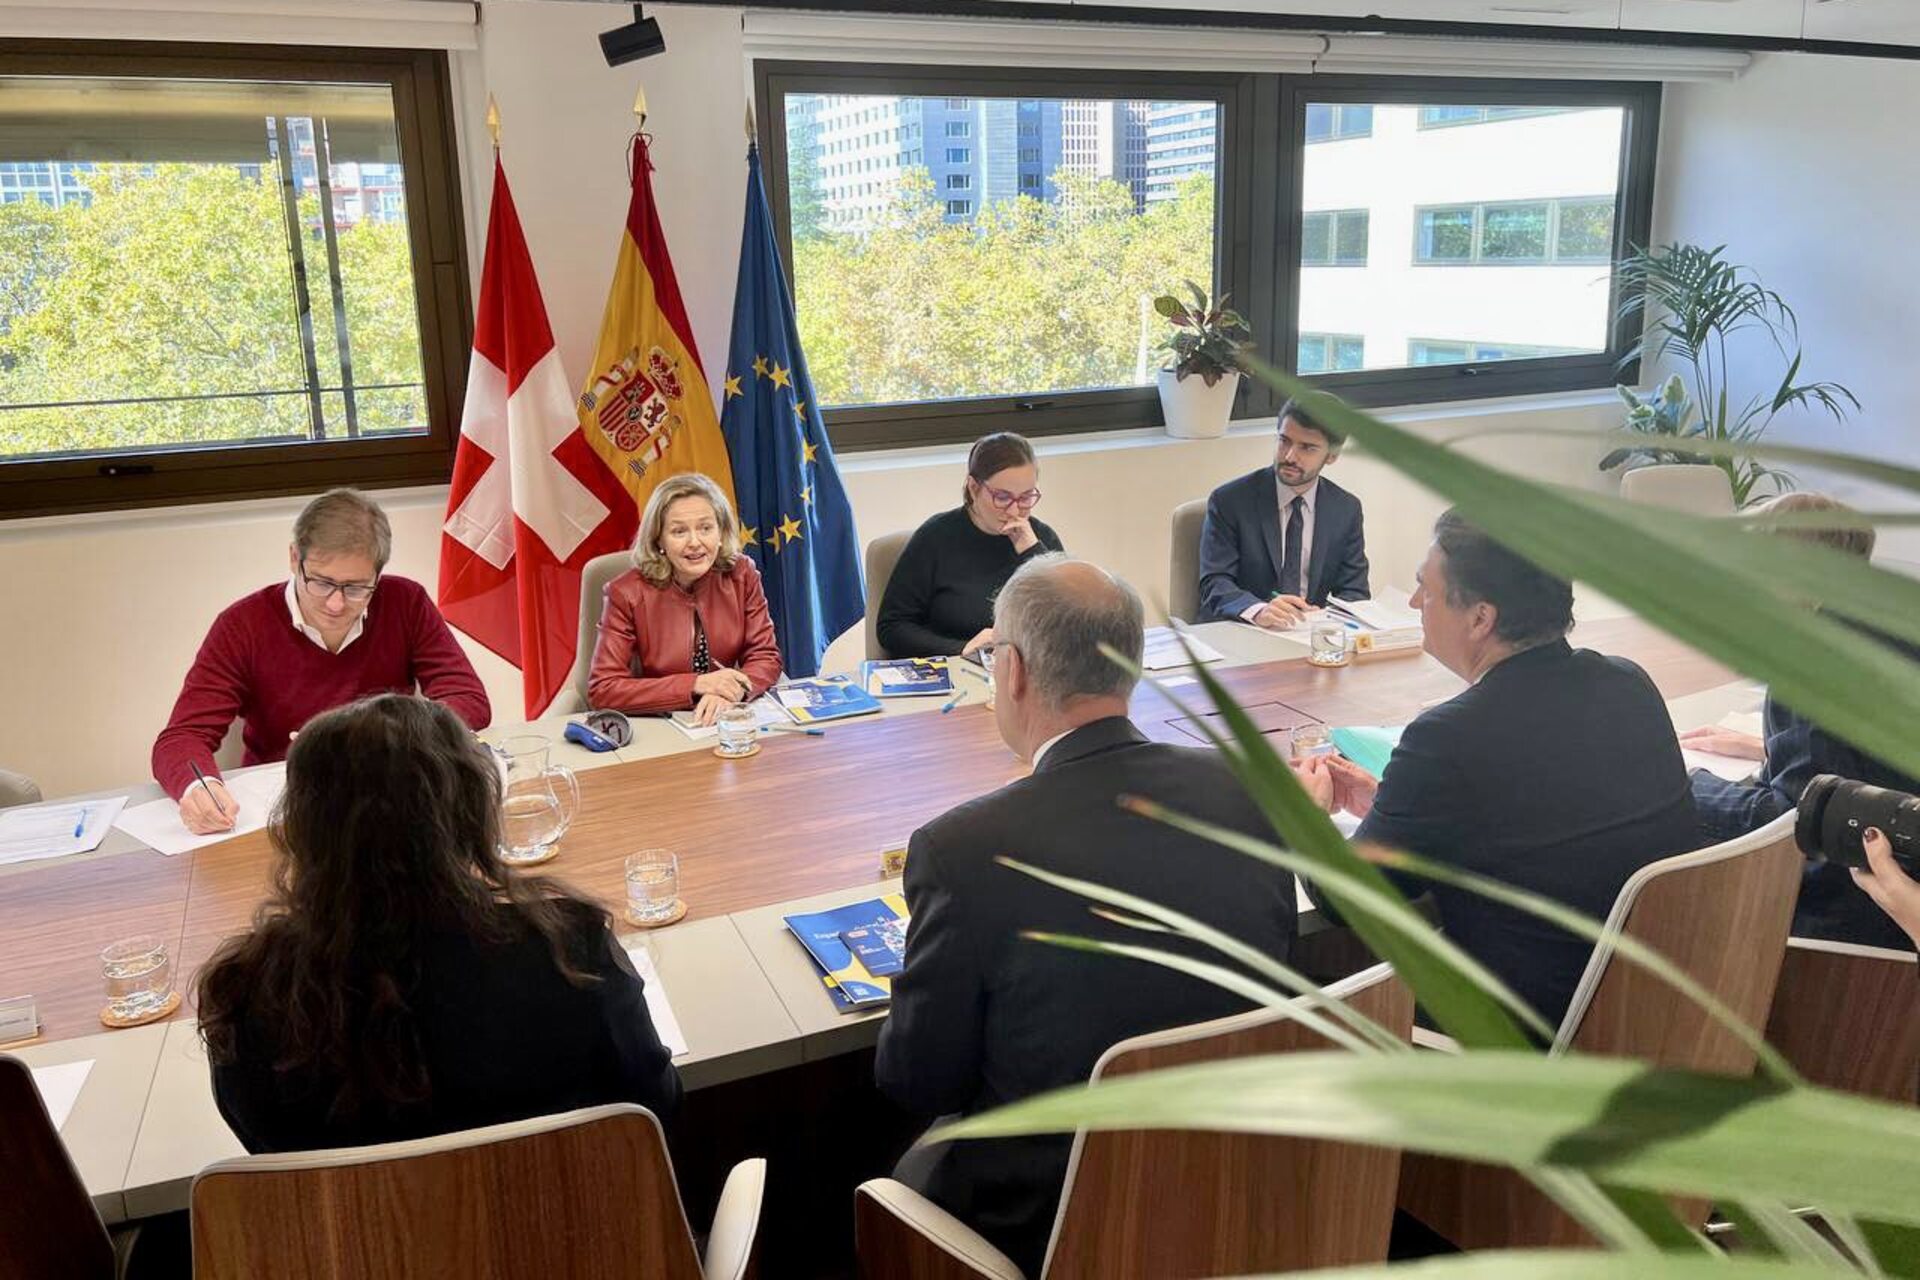 Incontro fra le delegazioni svizzera e spagnola a Madrid il 10 e 11 novembre 2022